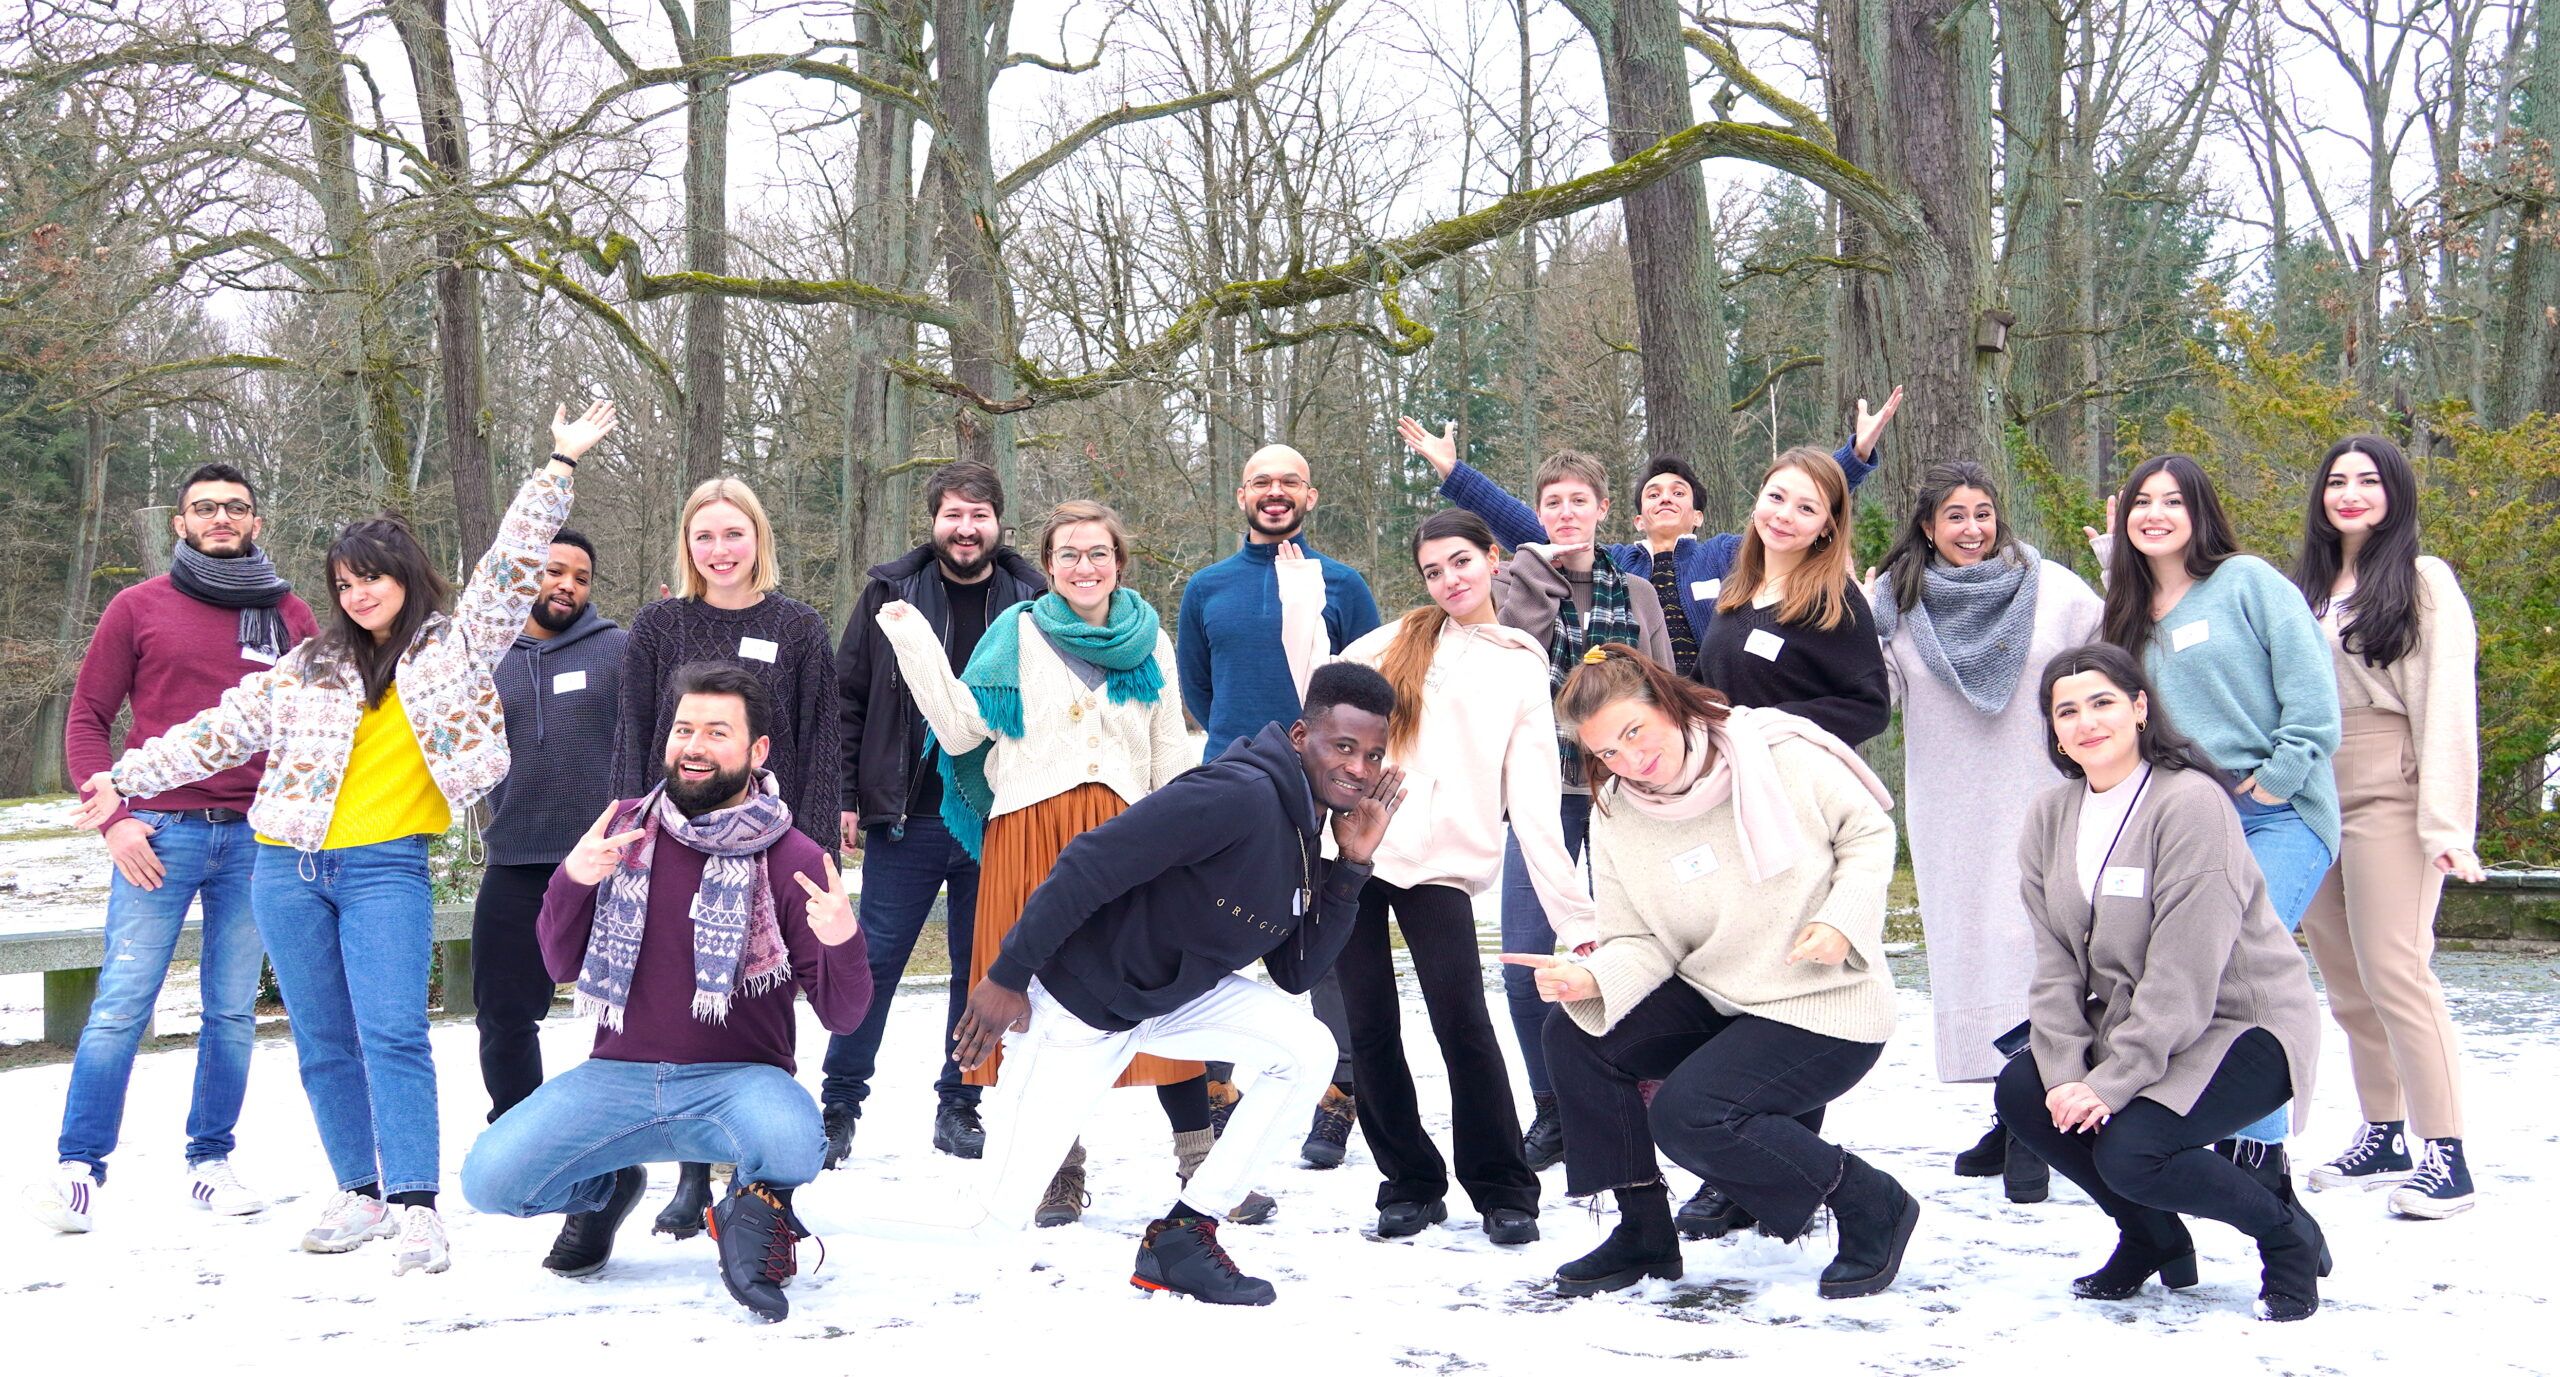 Das Team und eine zweite Gruppe posieren, lachen und winken in die Kamera in einer winterlichen Landschaft.